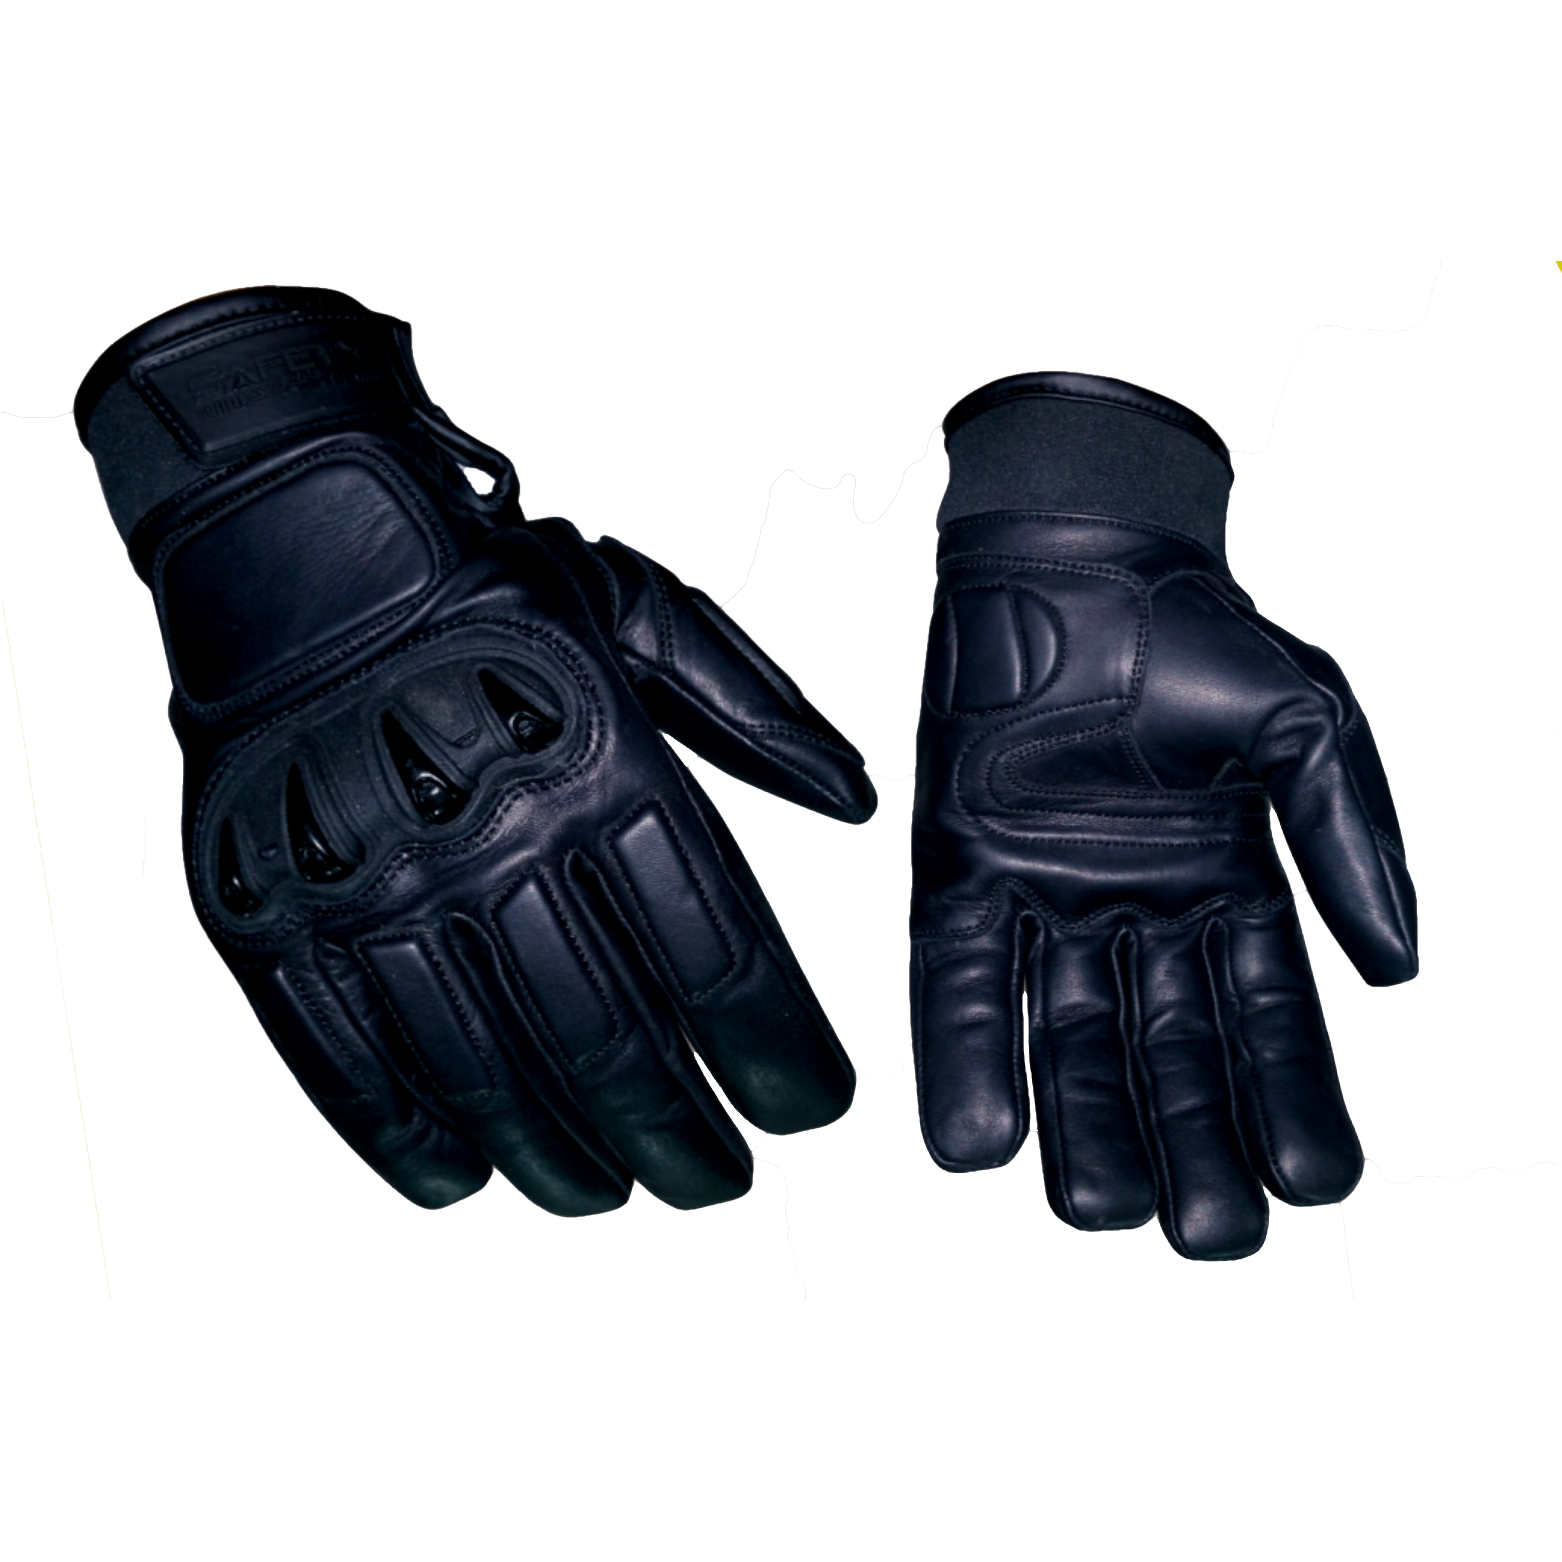 Ochranné rukavice proti proříznutí CEST Protect & Knife